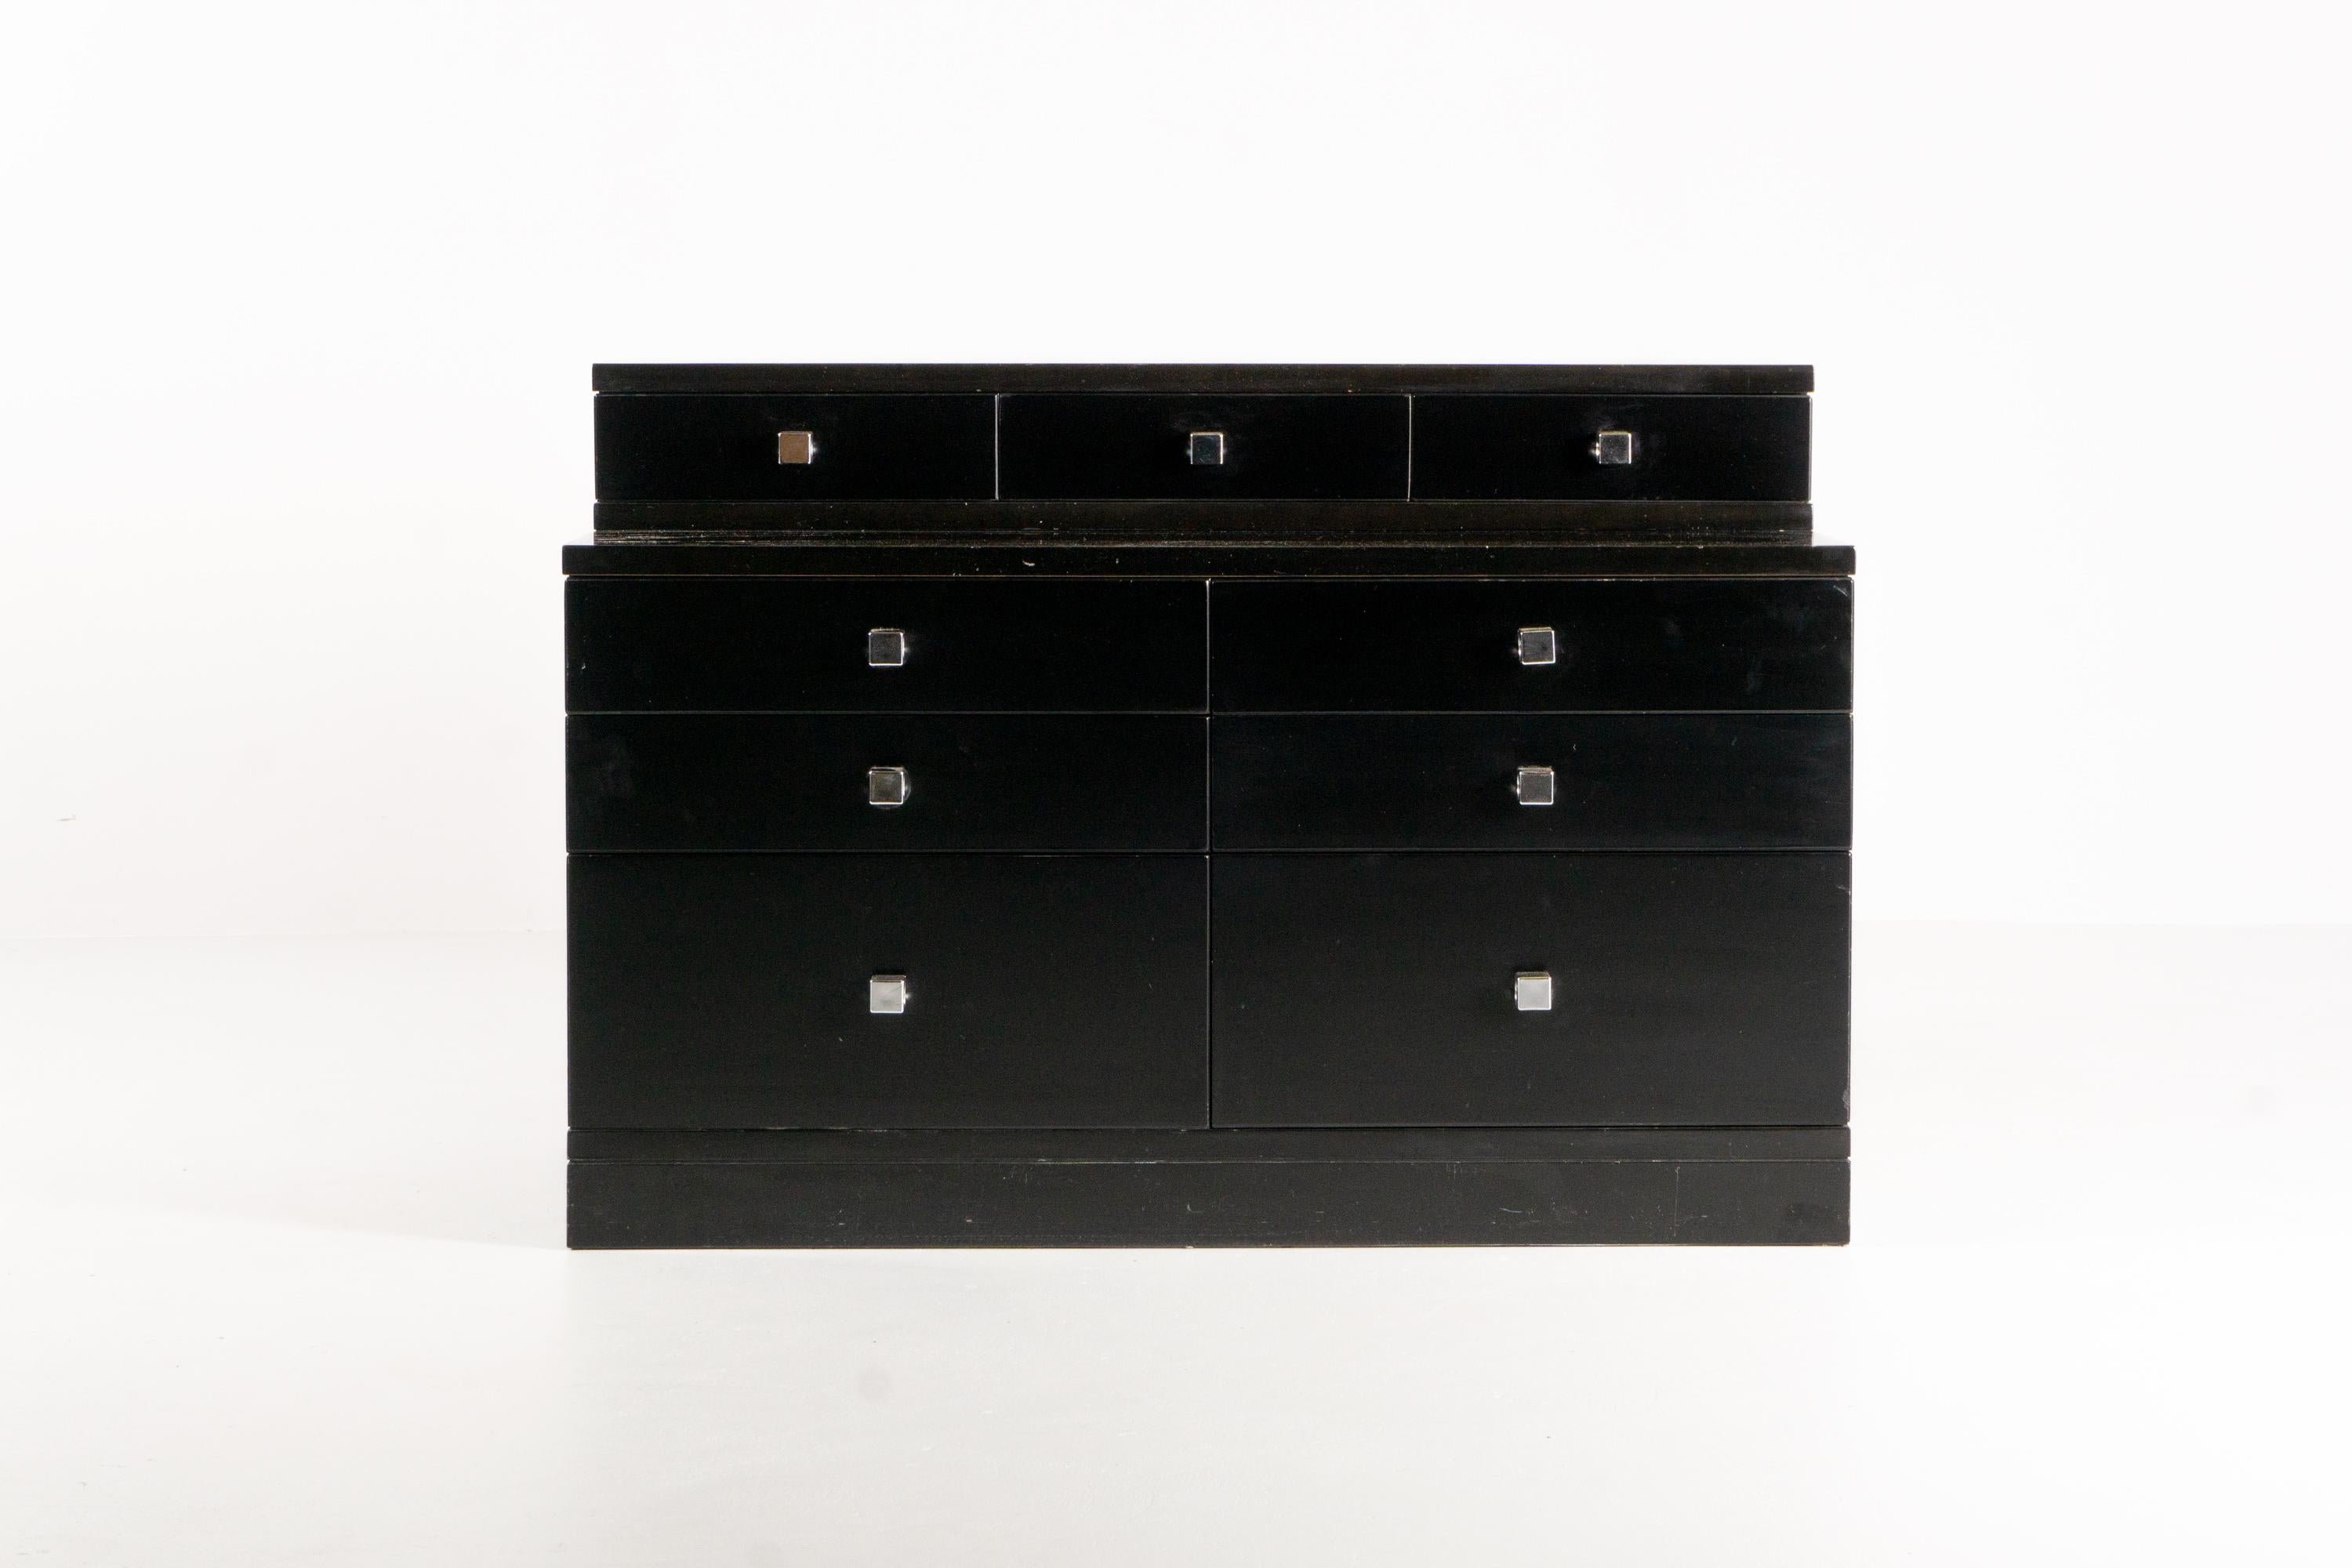 Cet extraordinaire meuble à tiroirs en bois laqué noir a été conçu par l'architecte et designer Ico Parisi vers 1970. Les neuf tiroirs de différentes tailles sont équipés de poignées rectangulaires en métal.
Ce meuble exceptionnel séduit par son